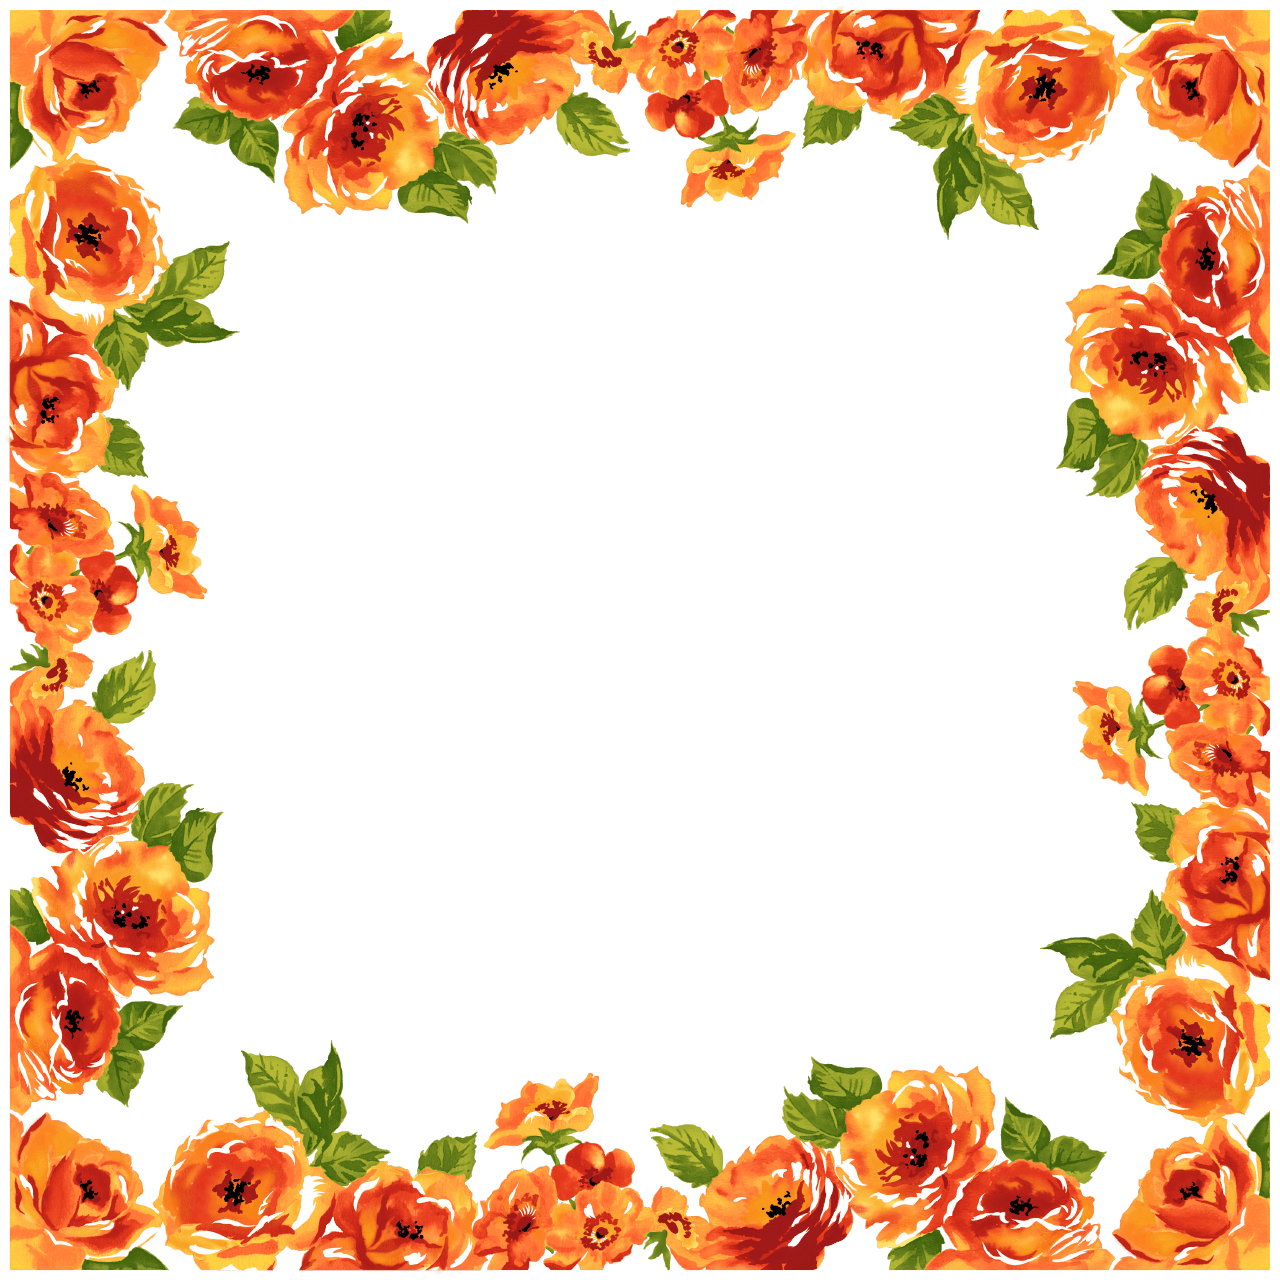 Frames clipart bbq. Deco frame flowers transparent